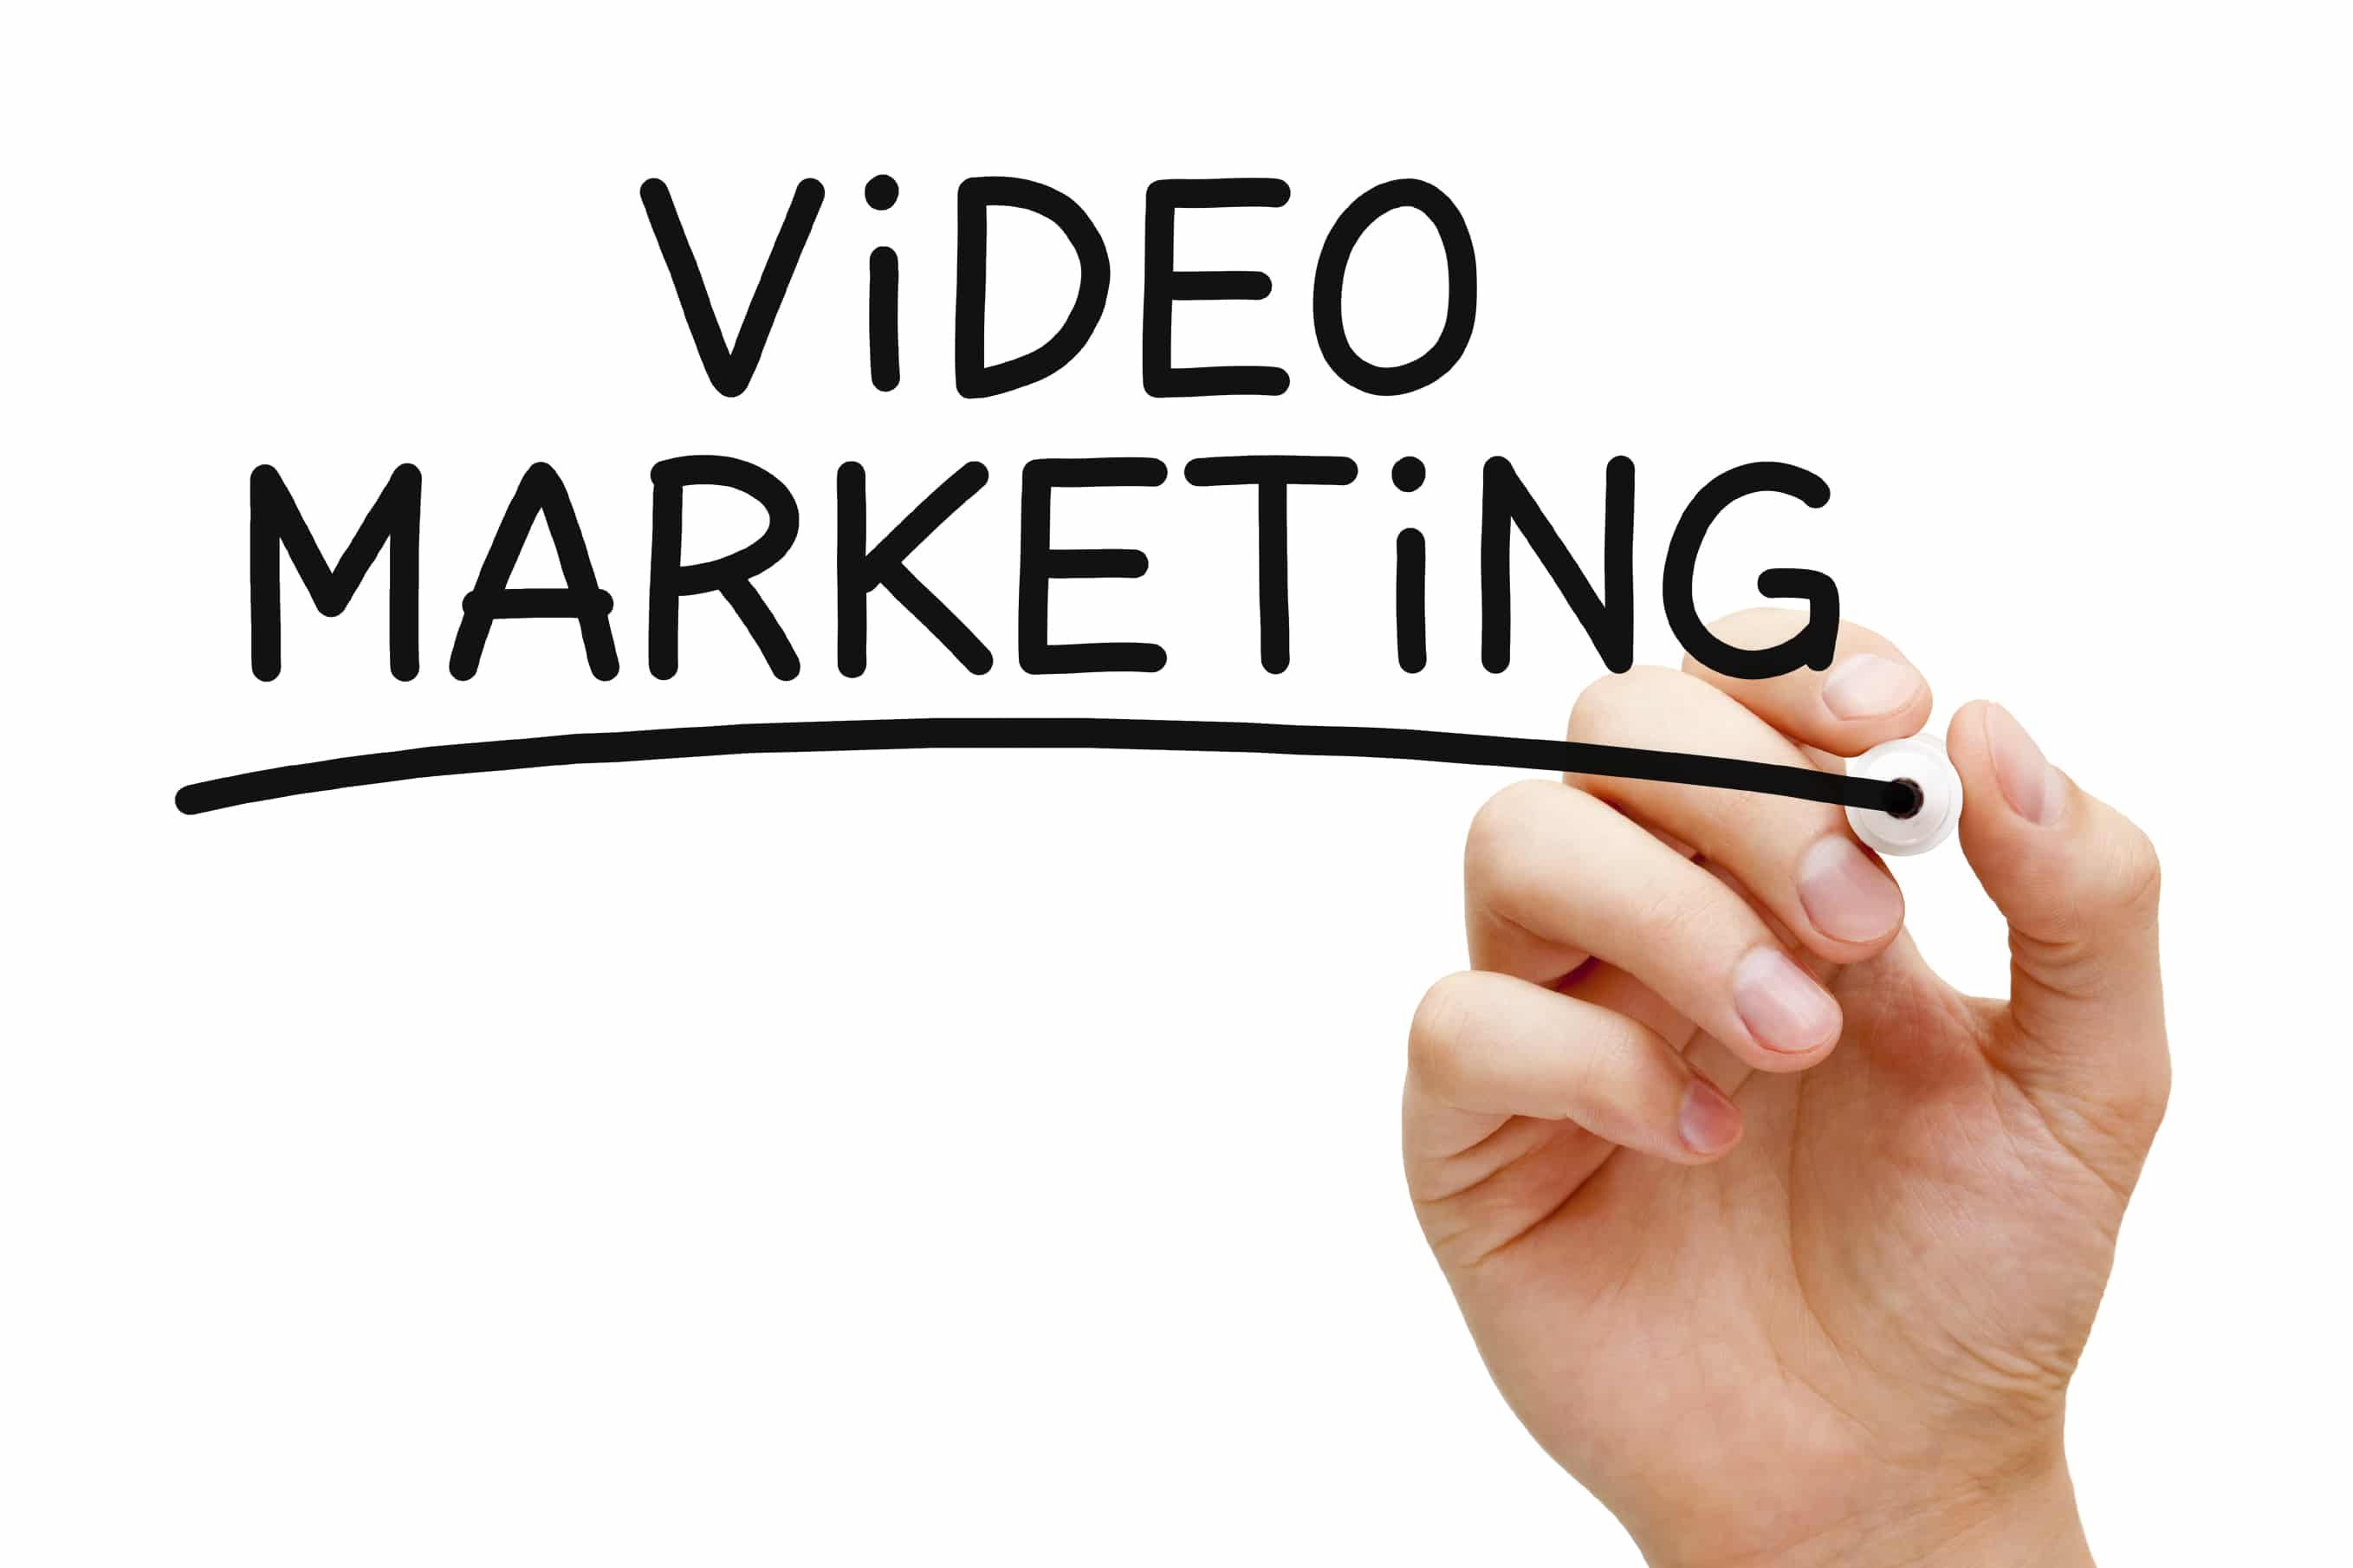 Comment attirer et convertir vos clients grâce au Marketing Vidéo